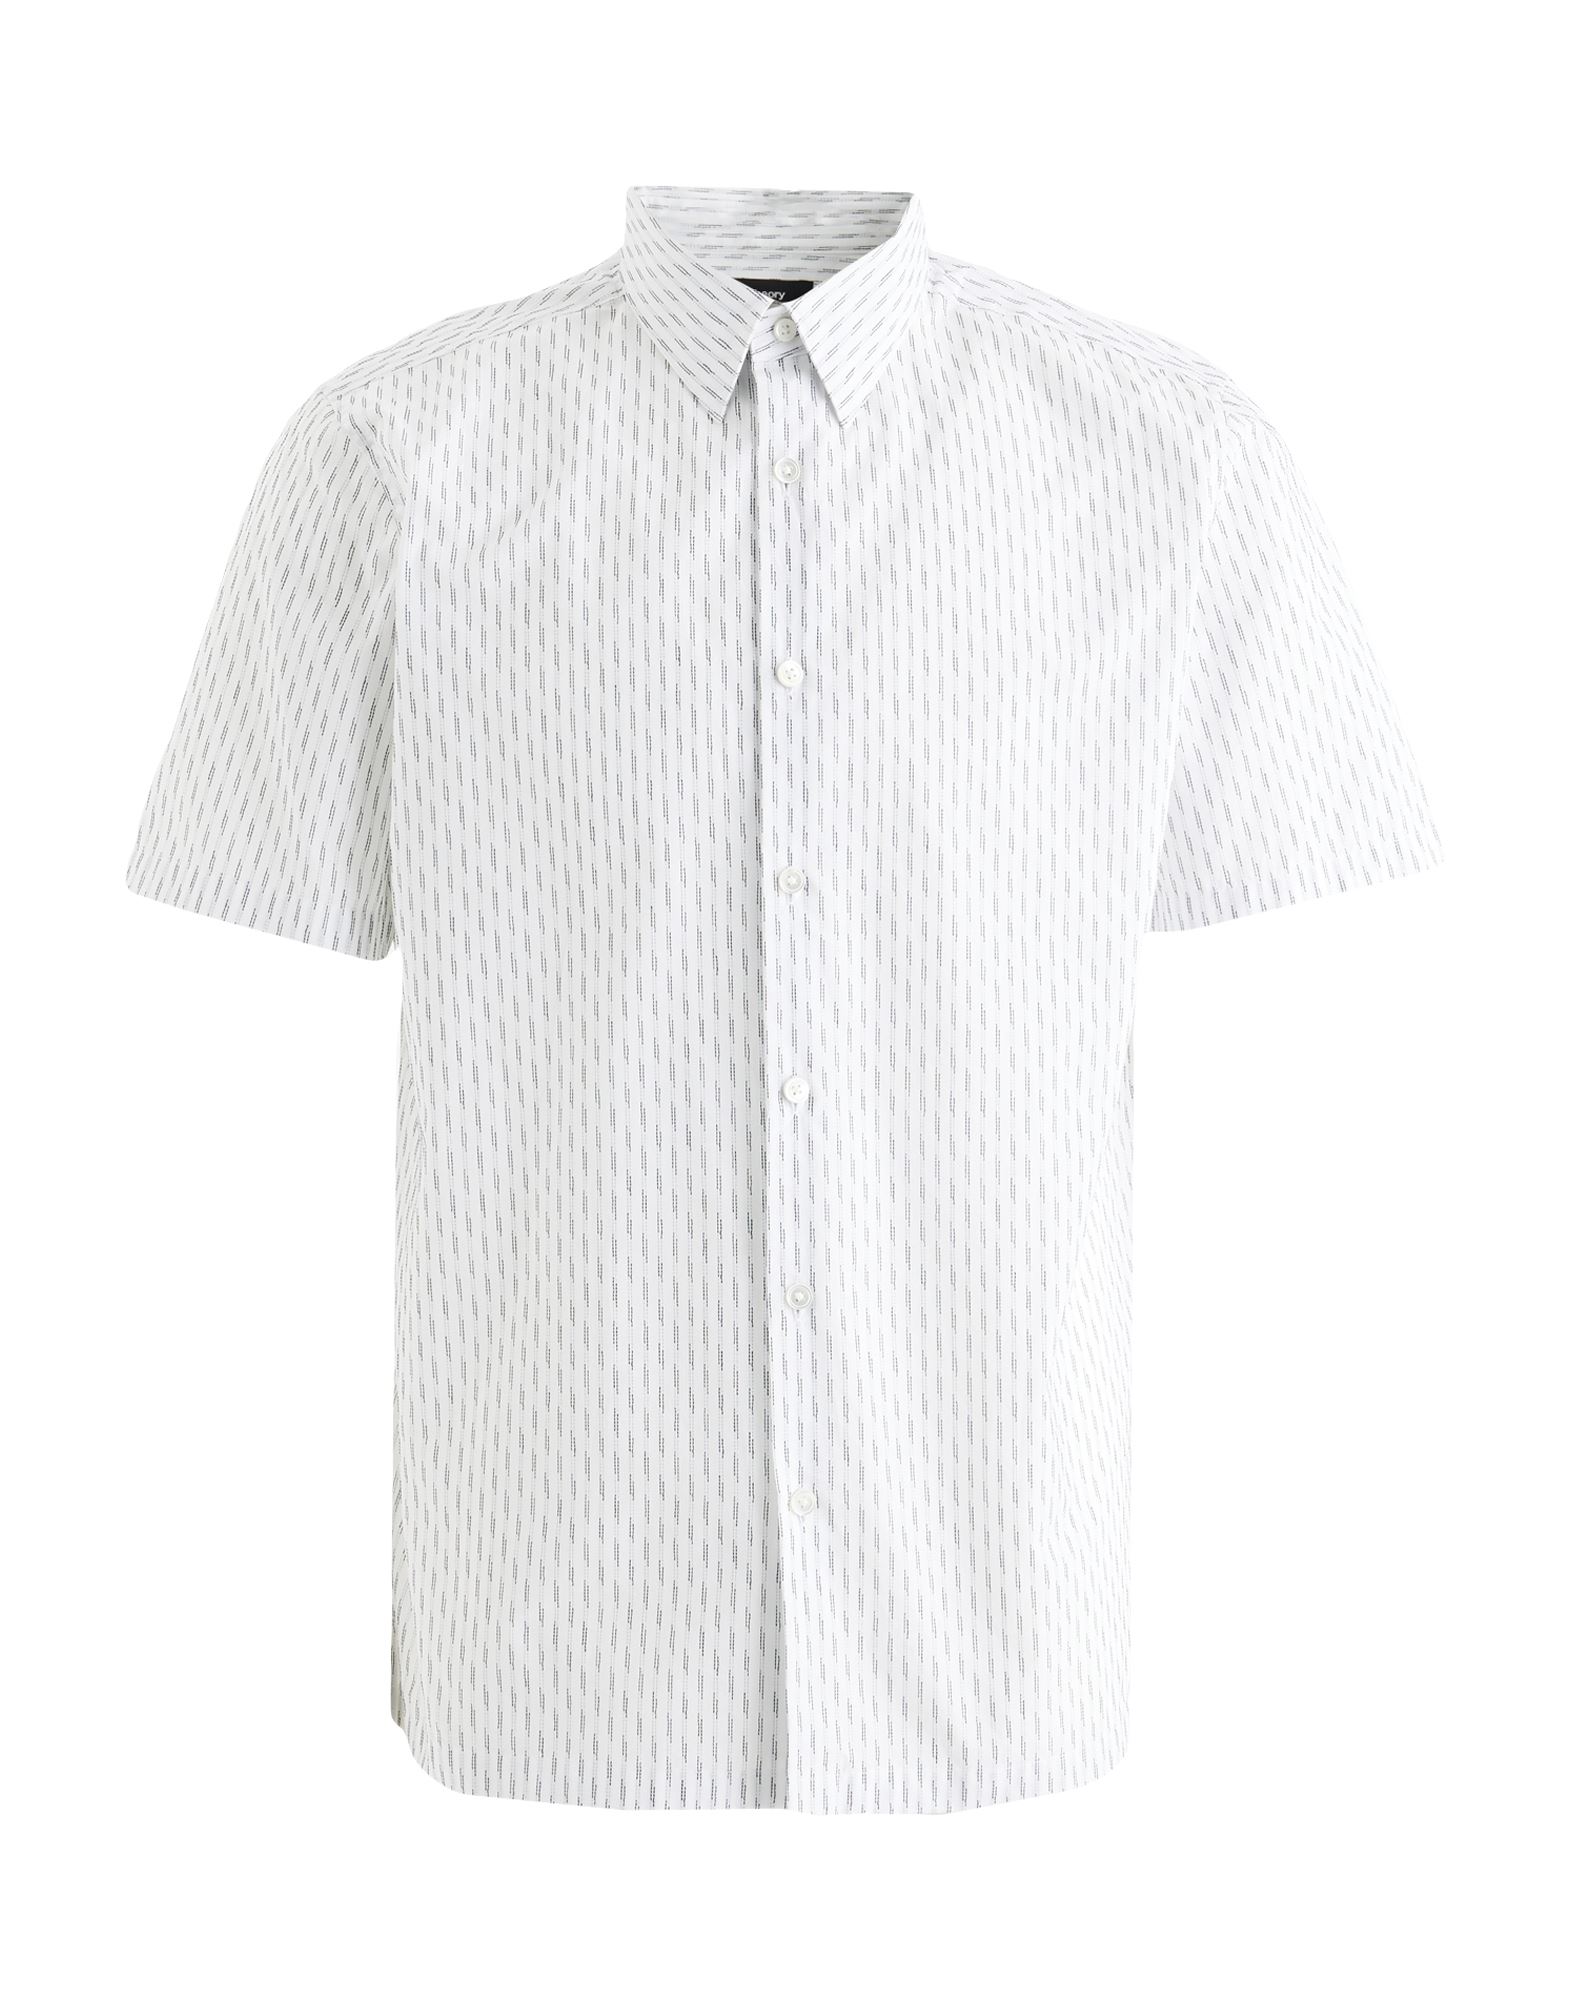 Shop Theory Man Shirt White Size L Cotton